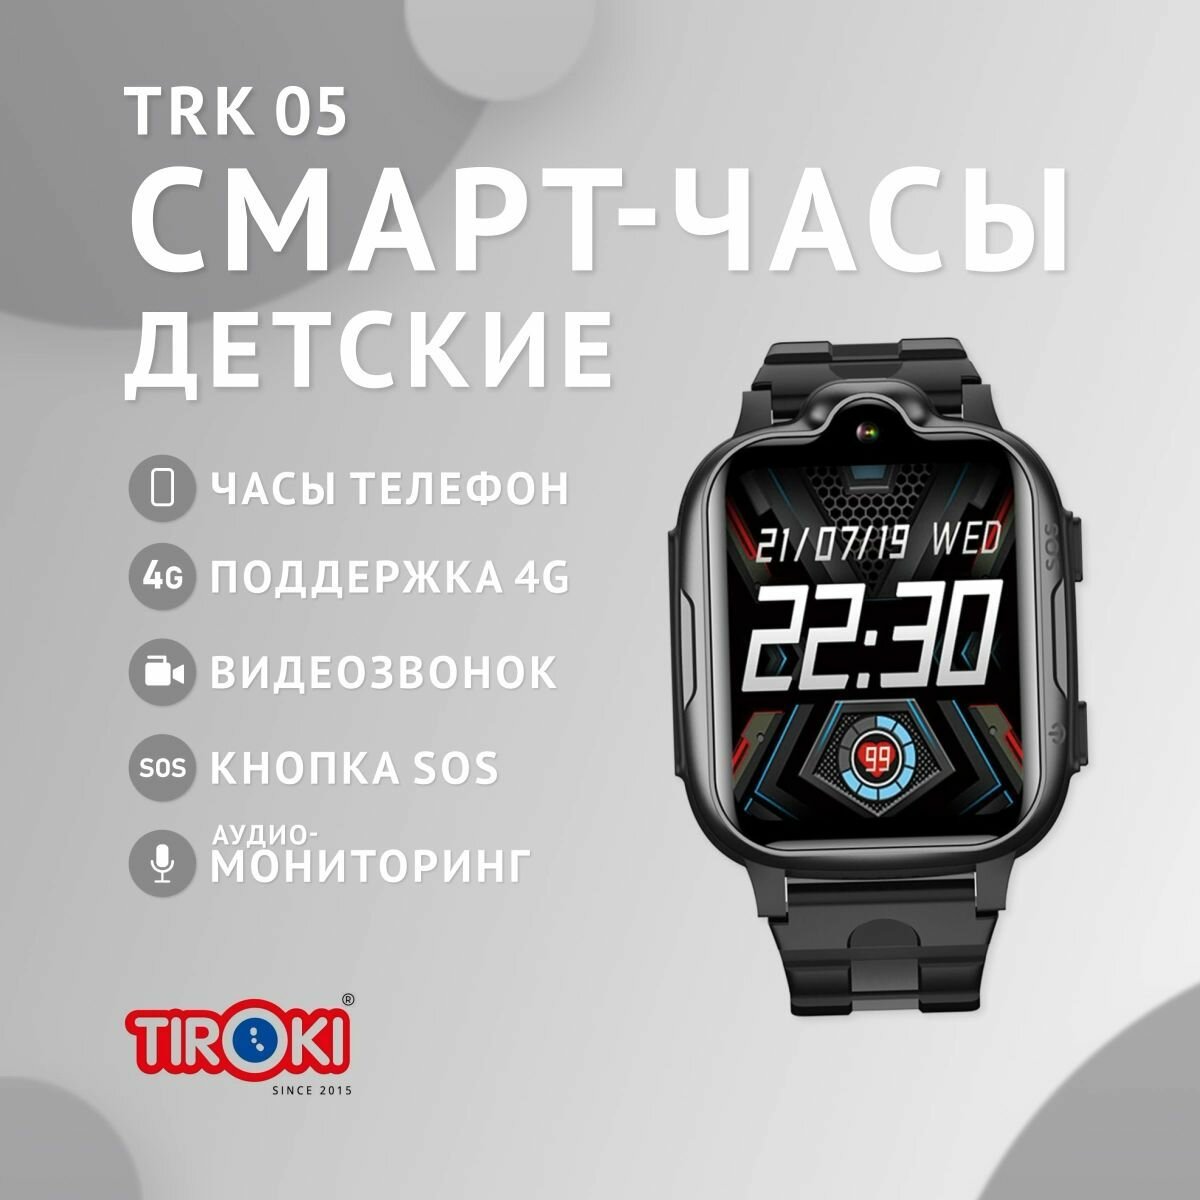 Детские смарт часы Tiroki TRK-05 черные 4G, с GPS, кнопкой SOS, видеозвонком и SIM картой